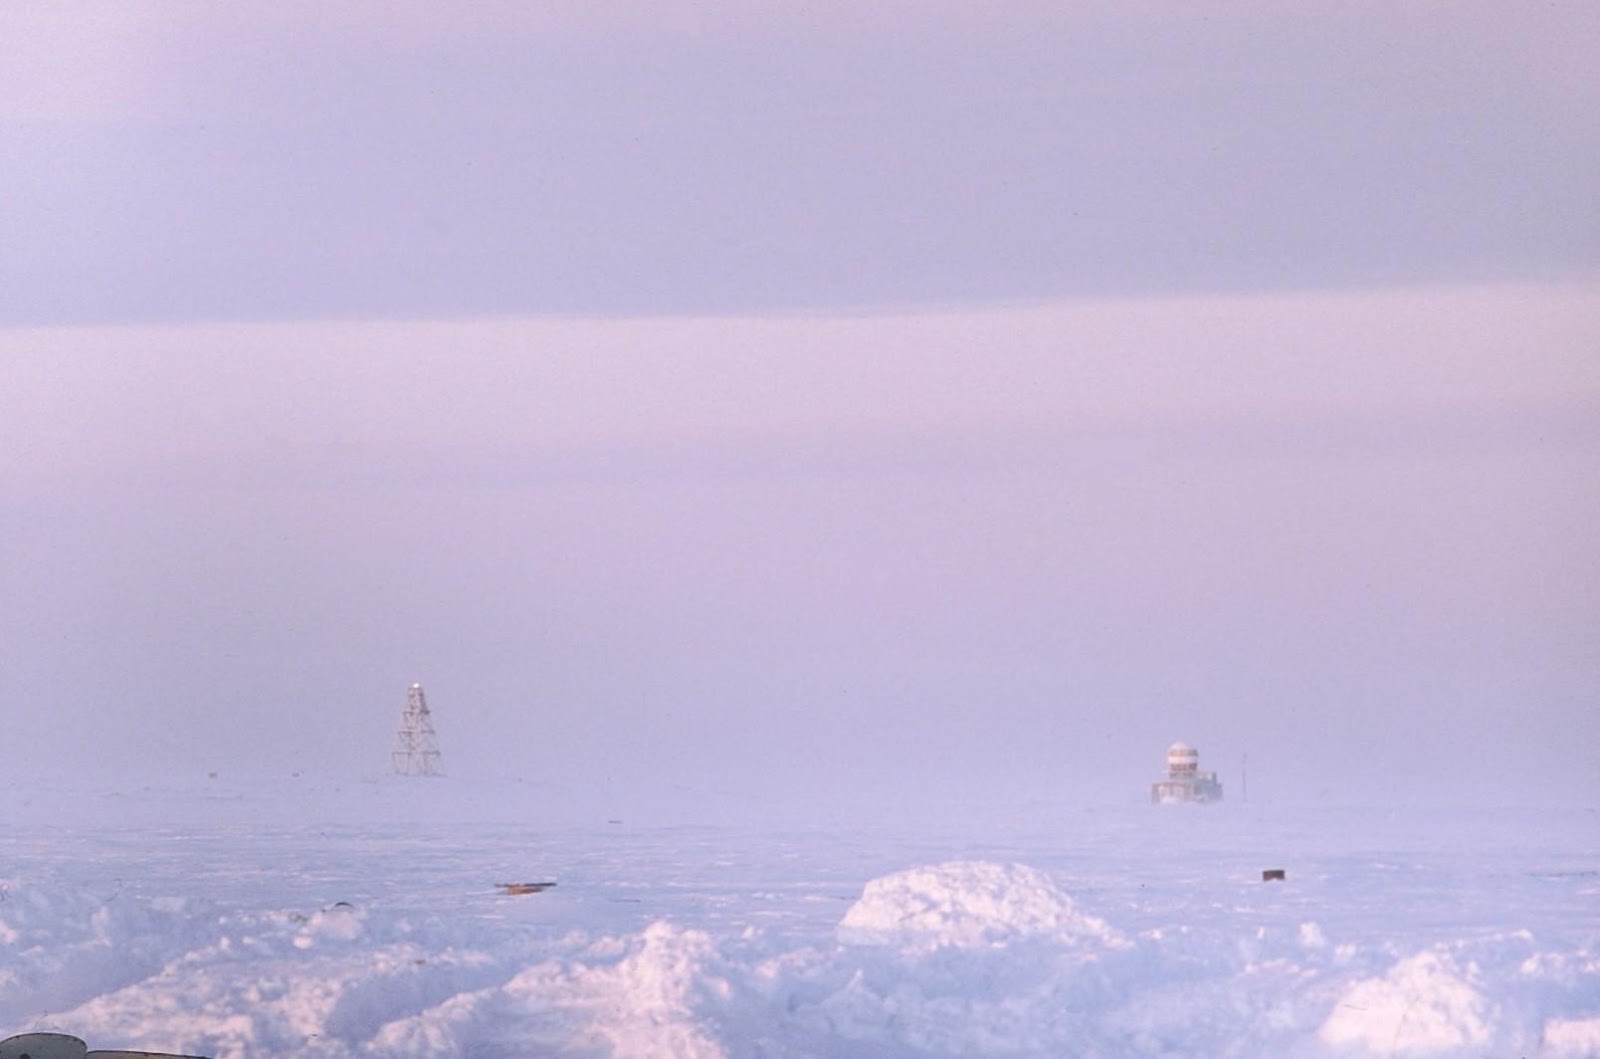 Мыс челюскин находится на скандинавском полуострове. Таймыр мыс Челюскин. Полуостров Таймыр мыс Челюскин. Маяк мыса Челюскин. Большой Арктический заповедник мыс Челюскин.